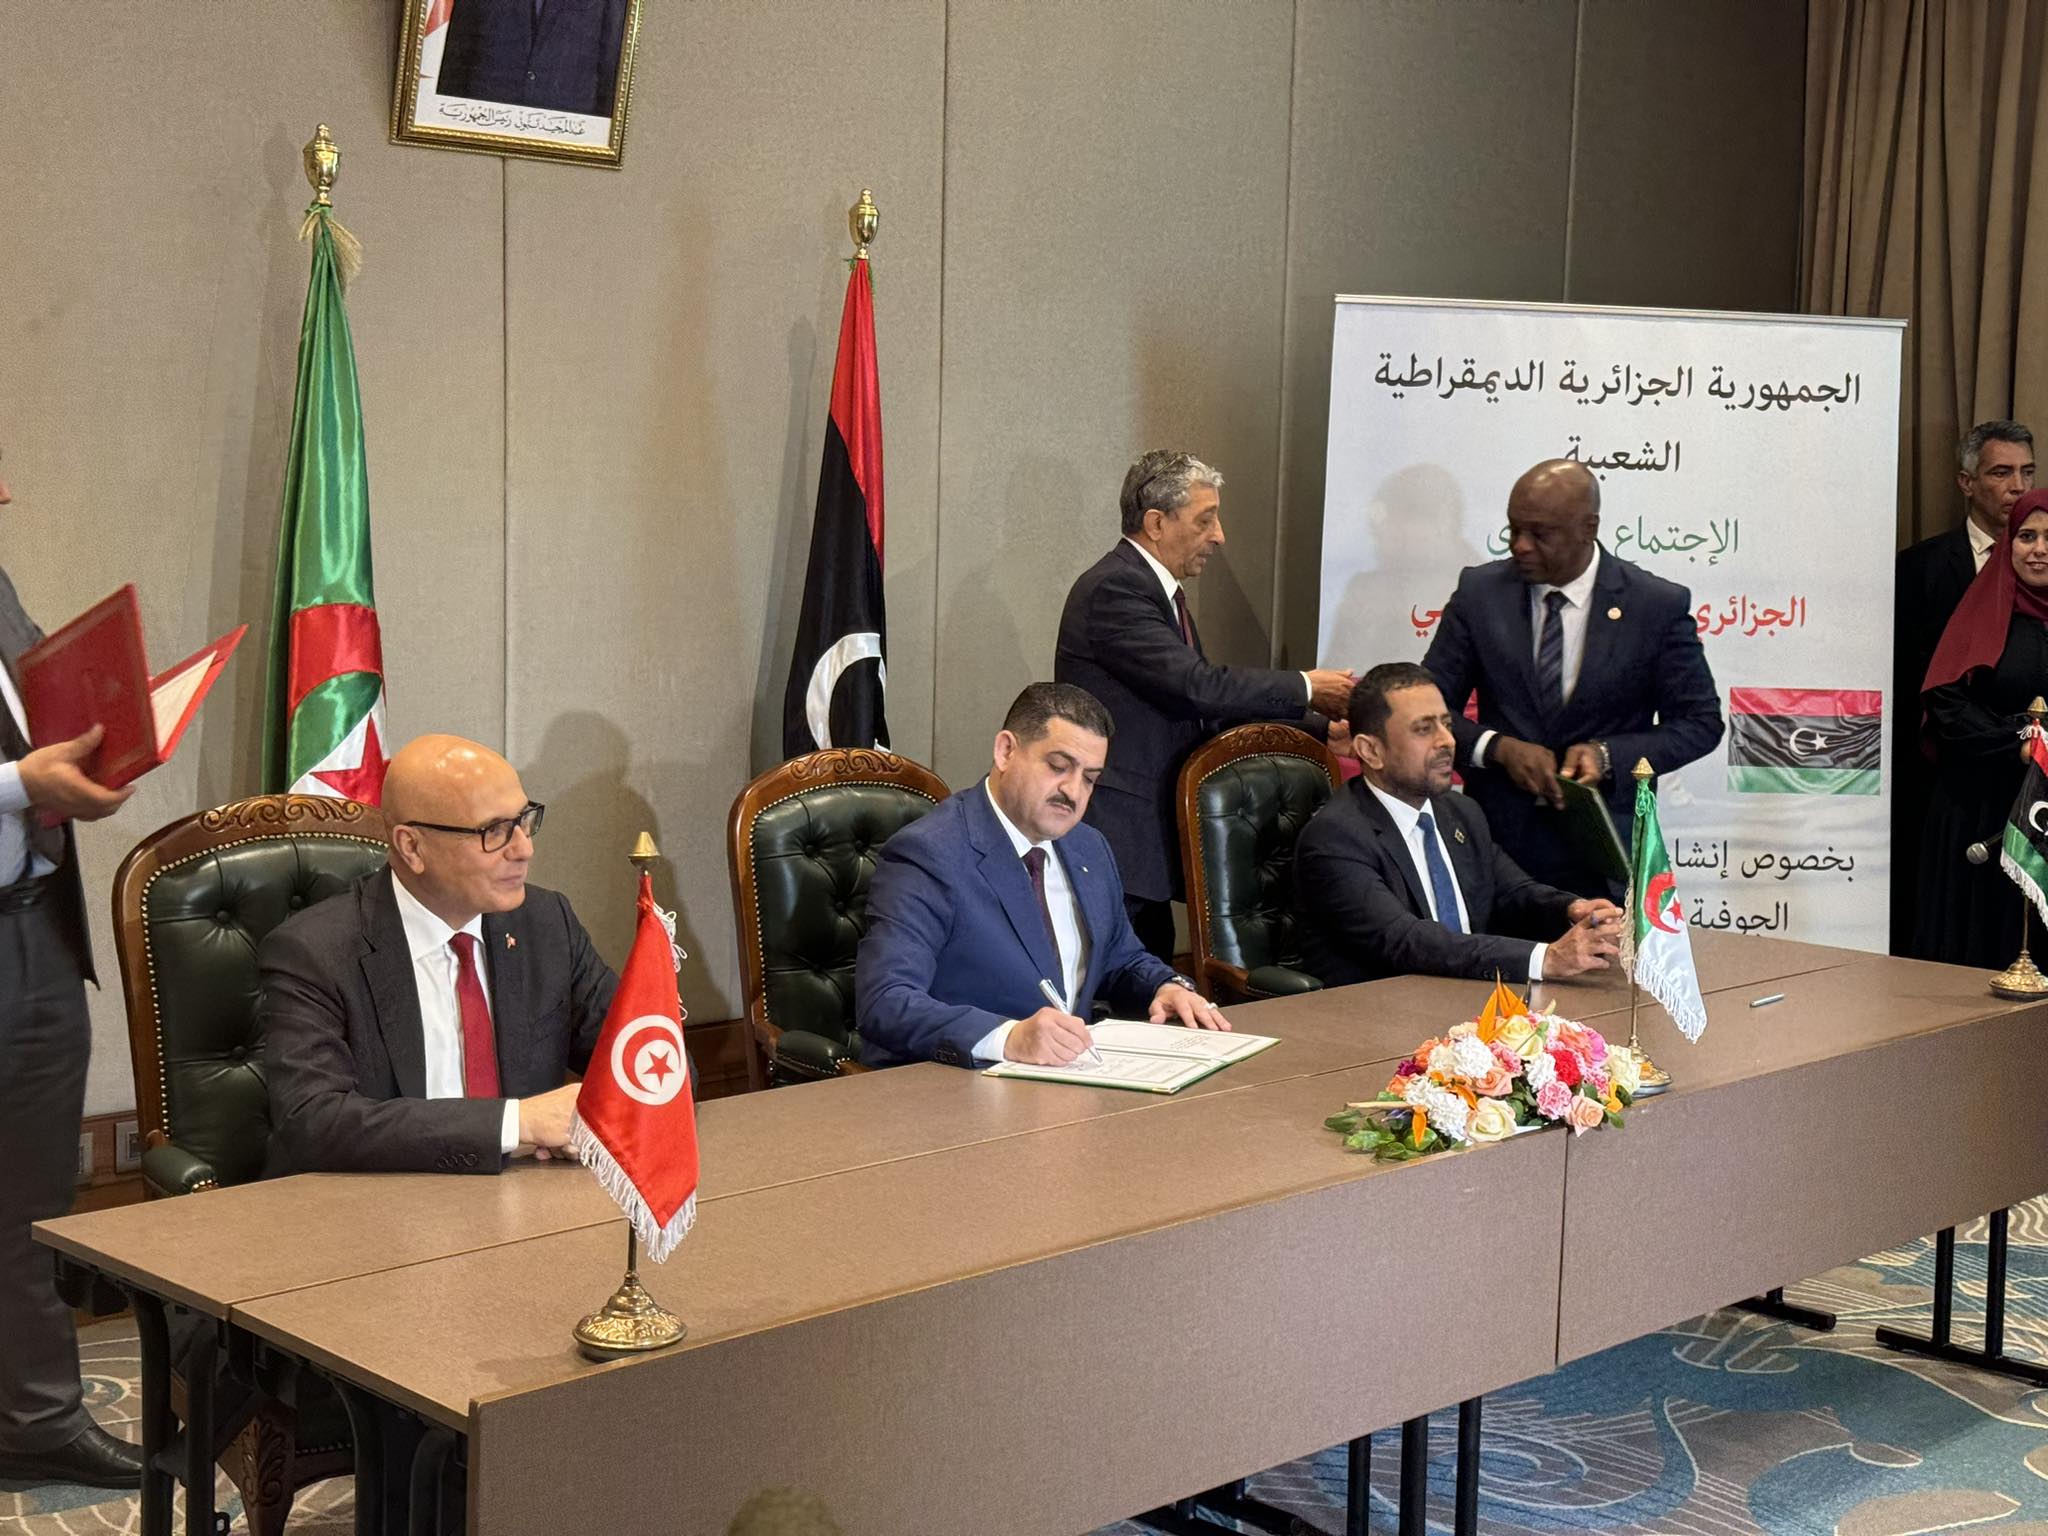 الجزائر-تونس-ليبيا: التوقيع على اتفاقية انشاء آلية تشاور حول ادارة المياه الجوفية المشتركة بالصحراء الشمالية